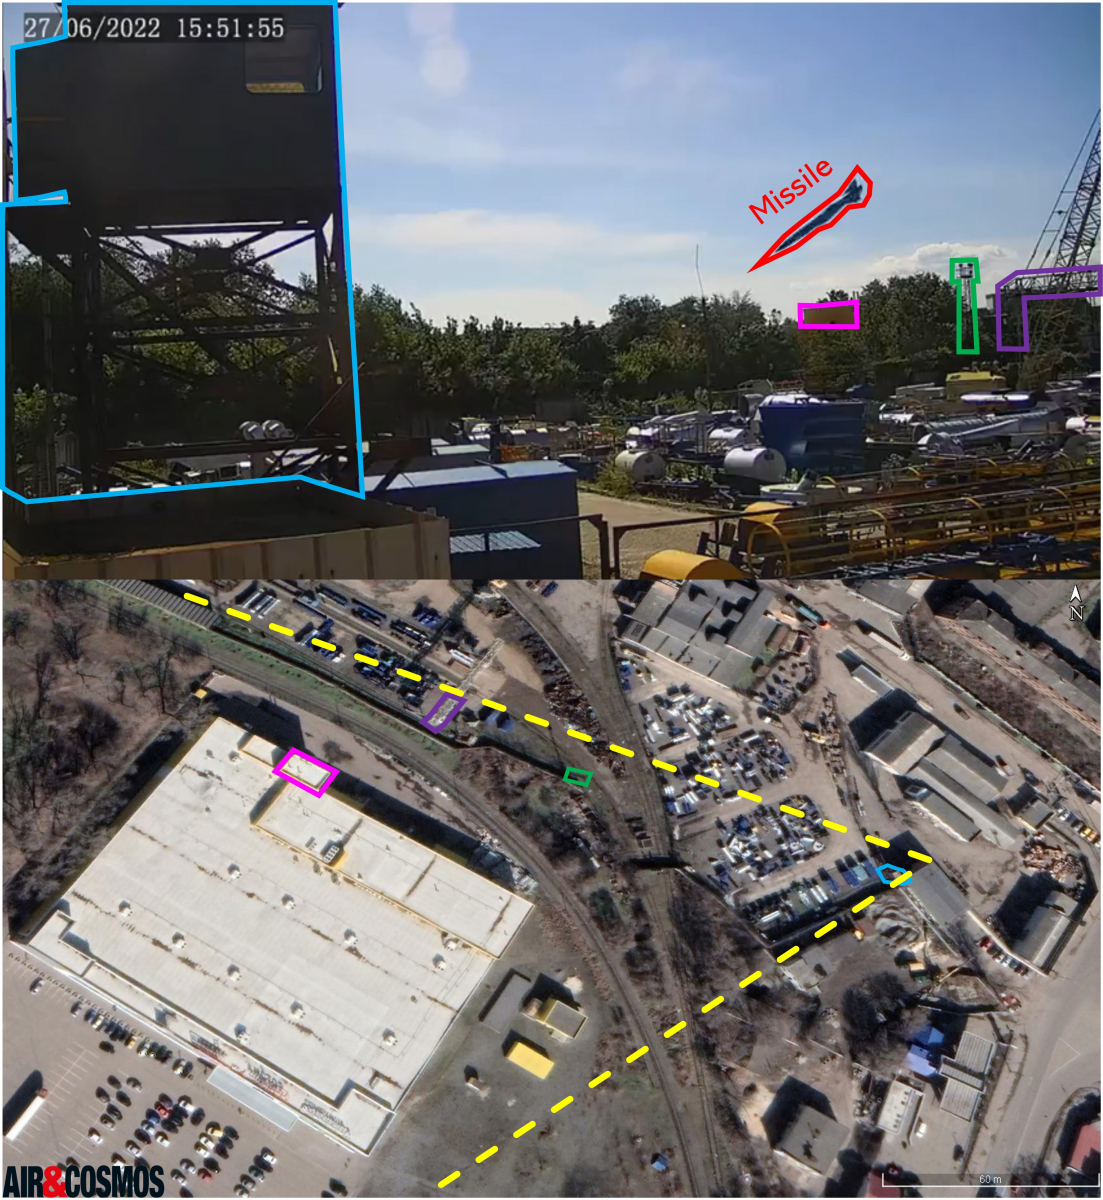 [Image 1] Capture d'écran provenant d'une caméra de surveillance toute proche du centre commercial.